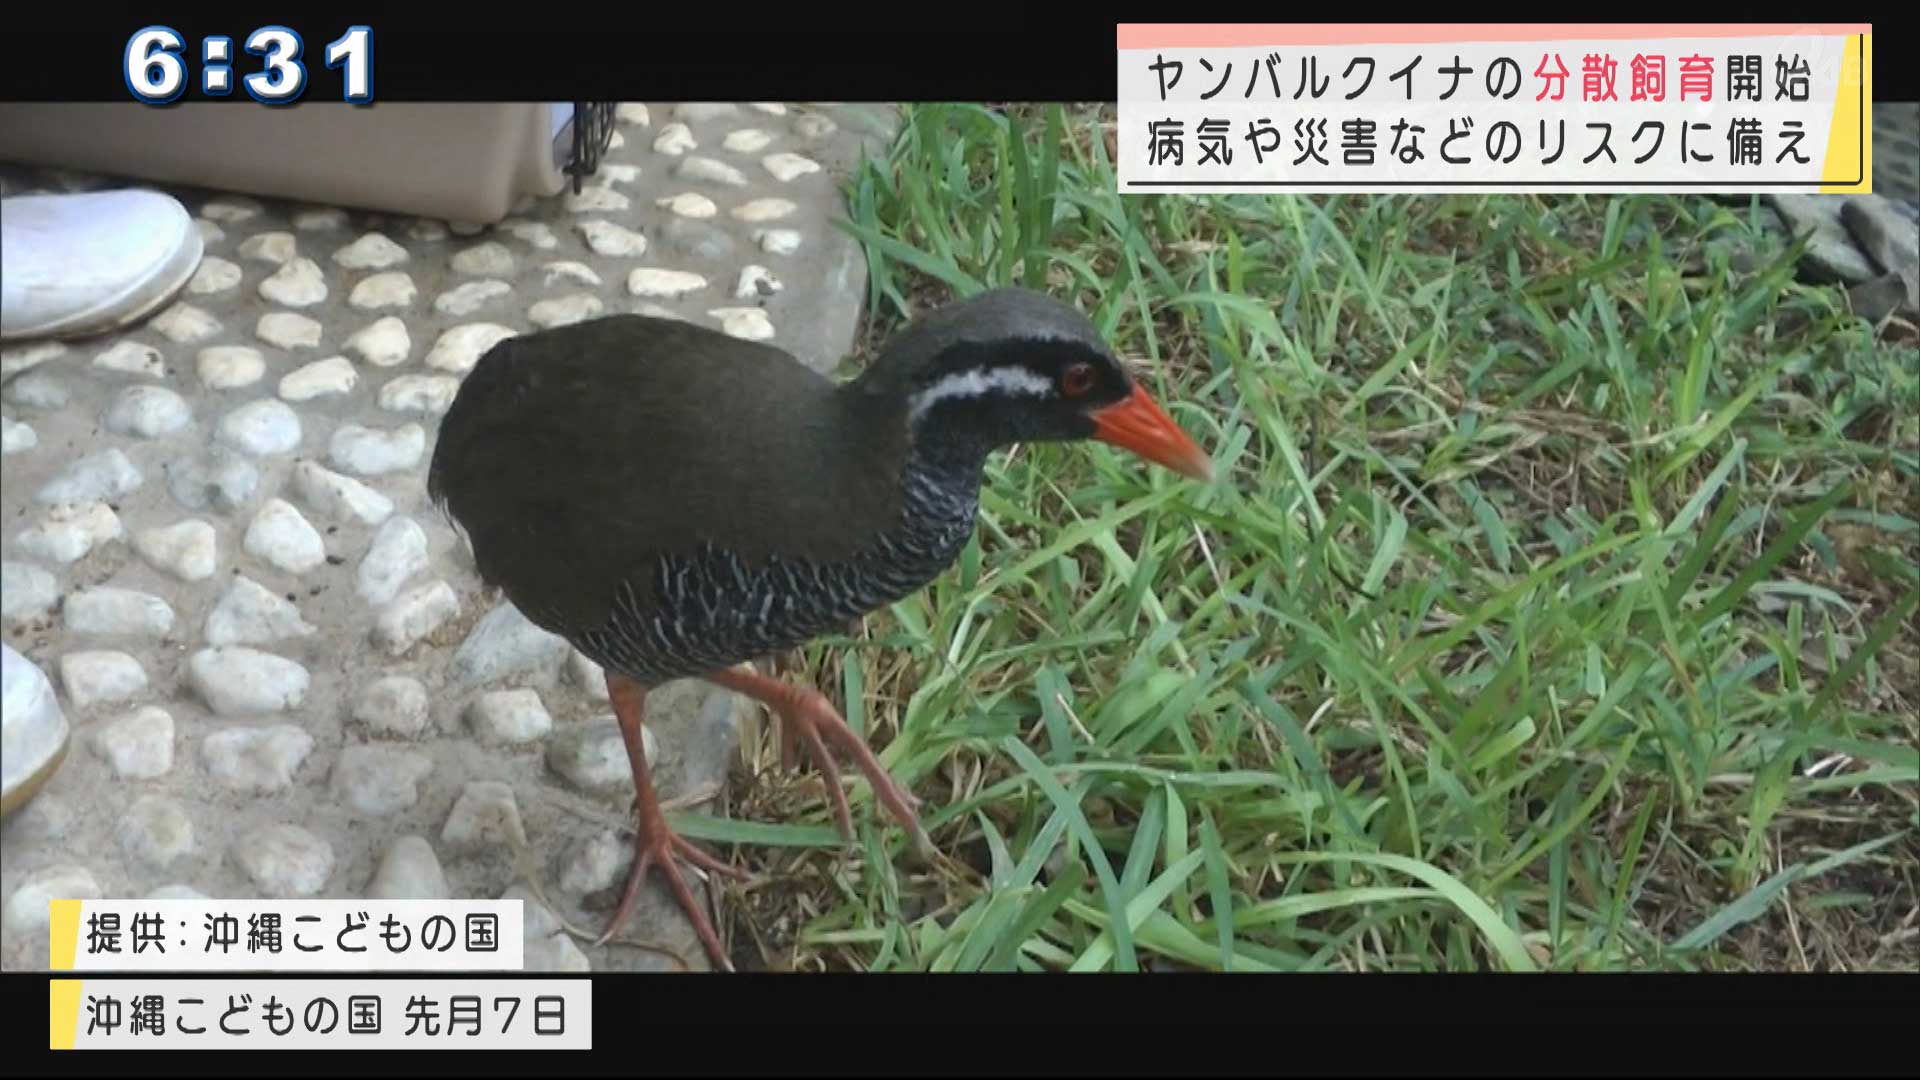 沖縄こどもの国でヤンバルクイナの分散飼育開始 Qab News Headline